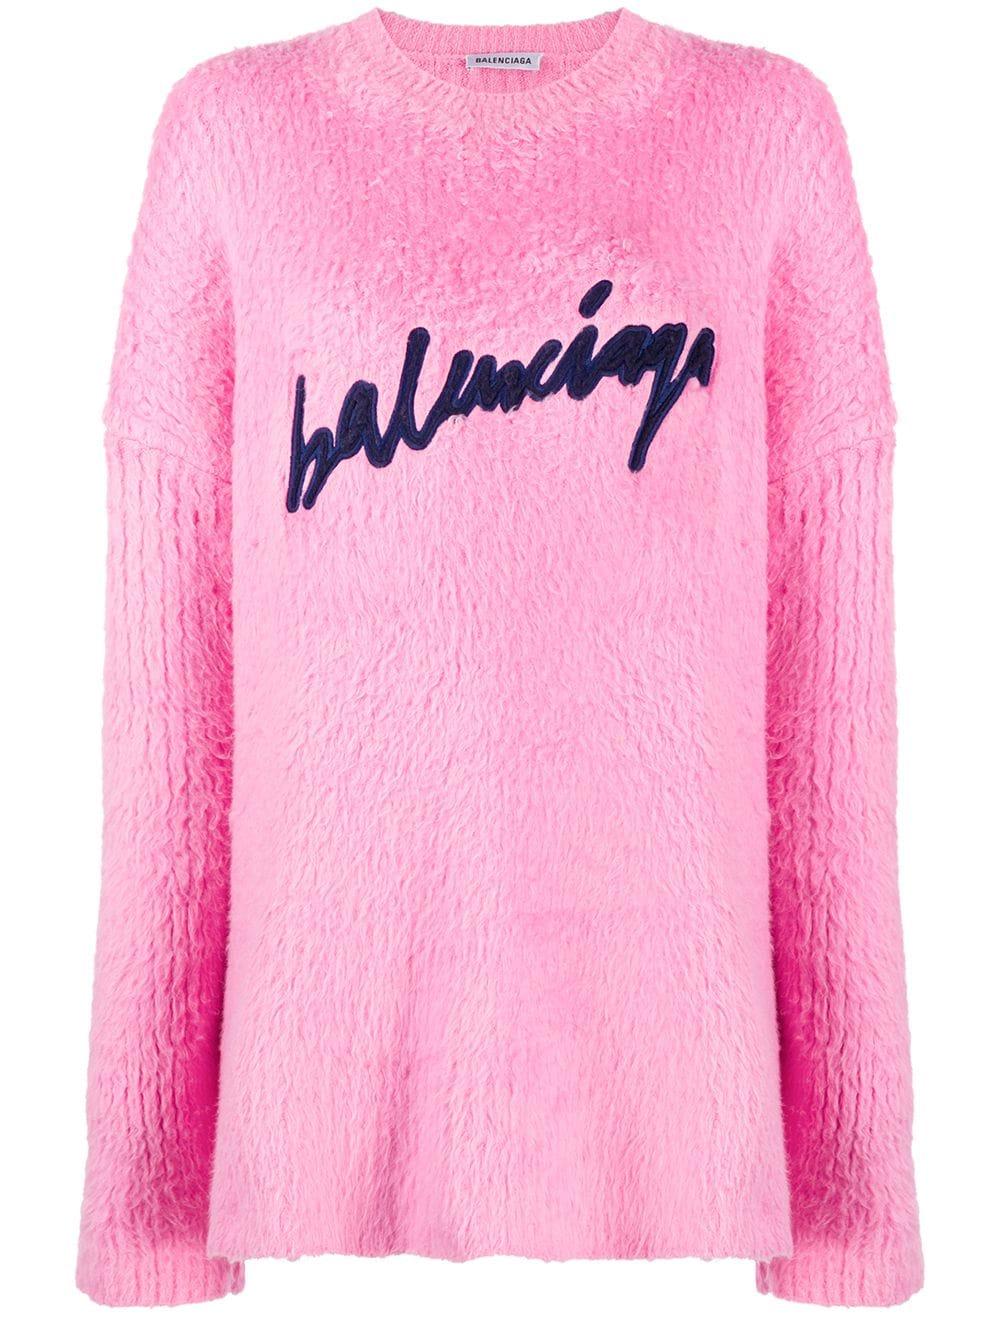 Balenciaga Fuzzy Logo Sweatshirt in Pink | Lyst